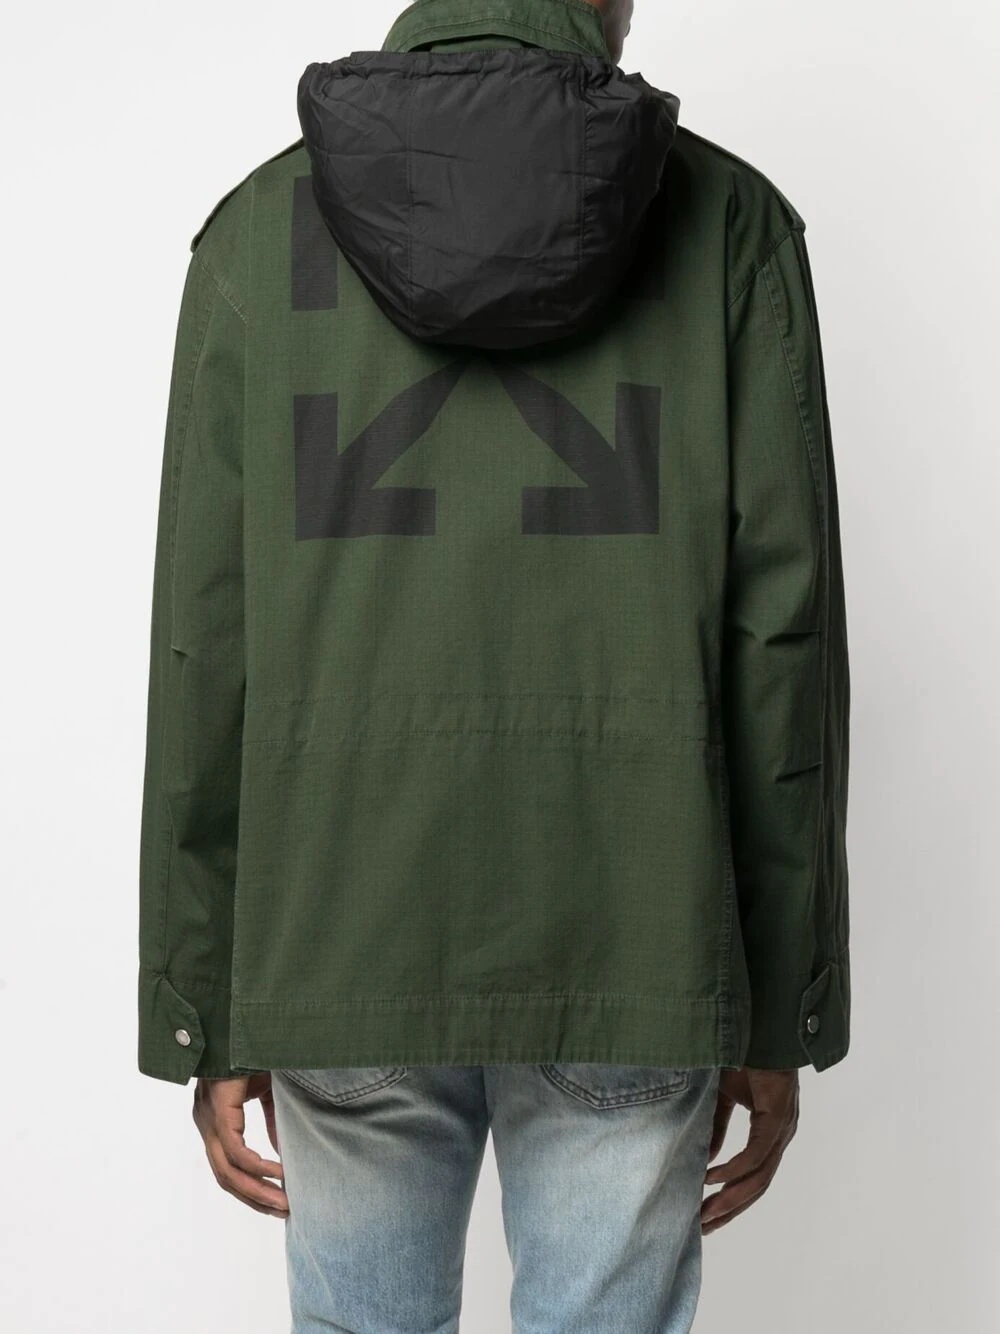 Arrows-motif hooded jacket - 6